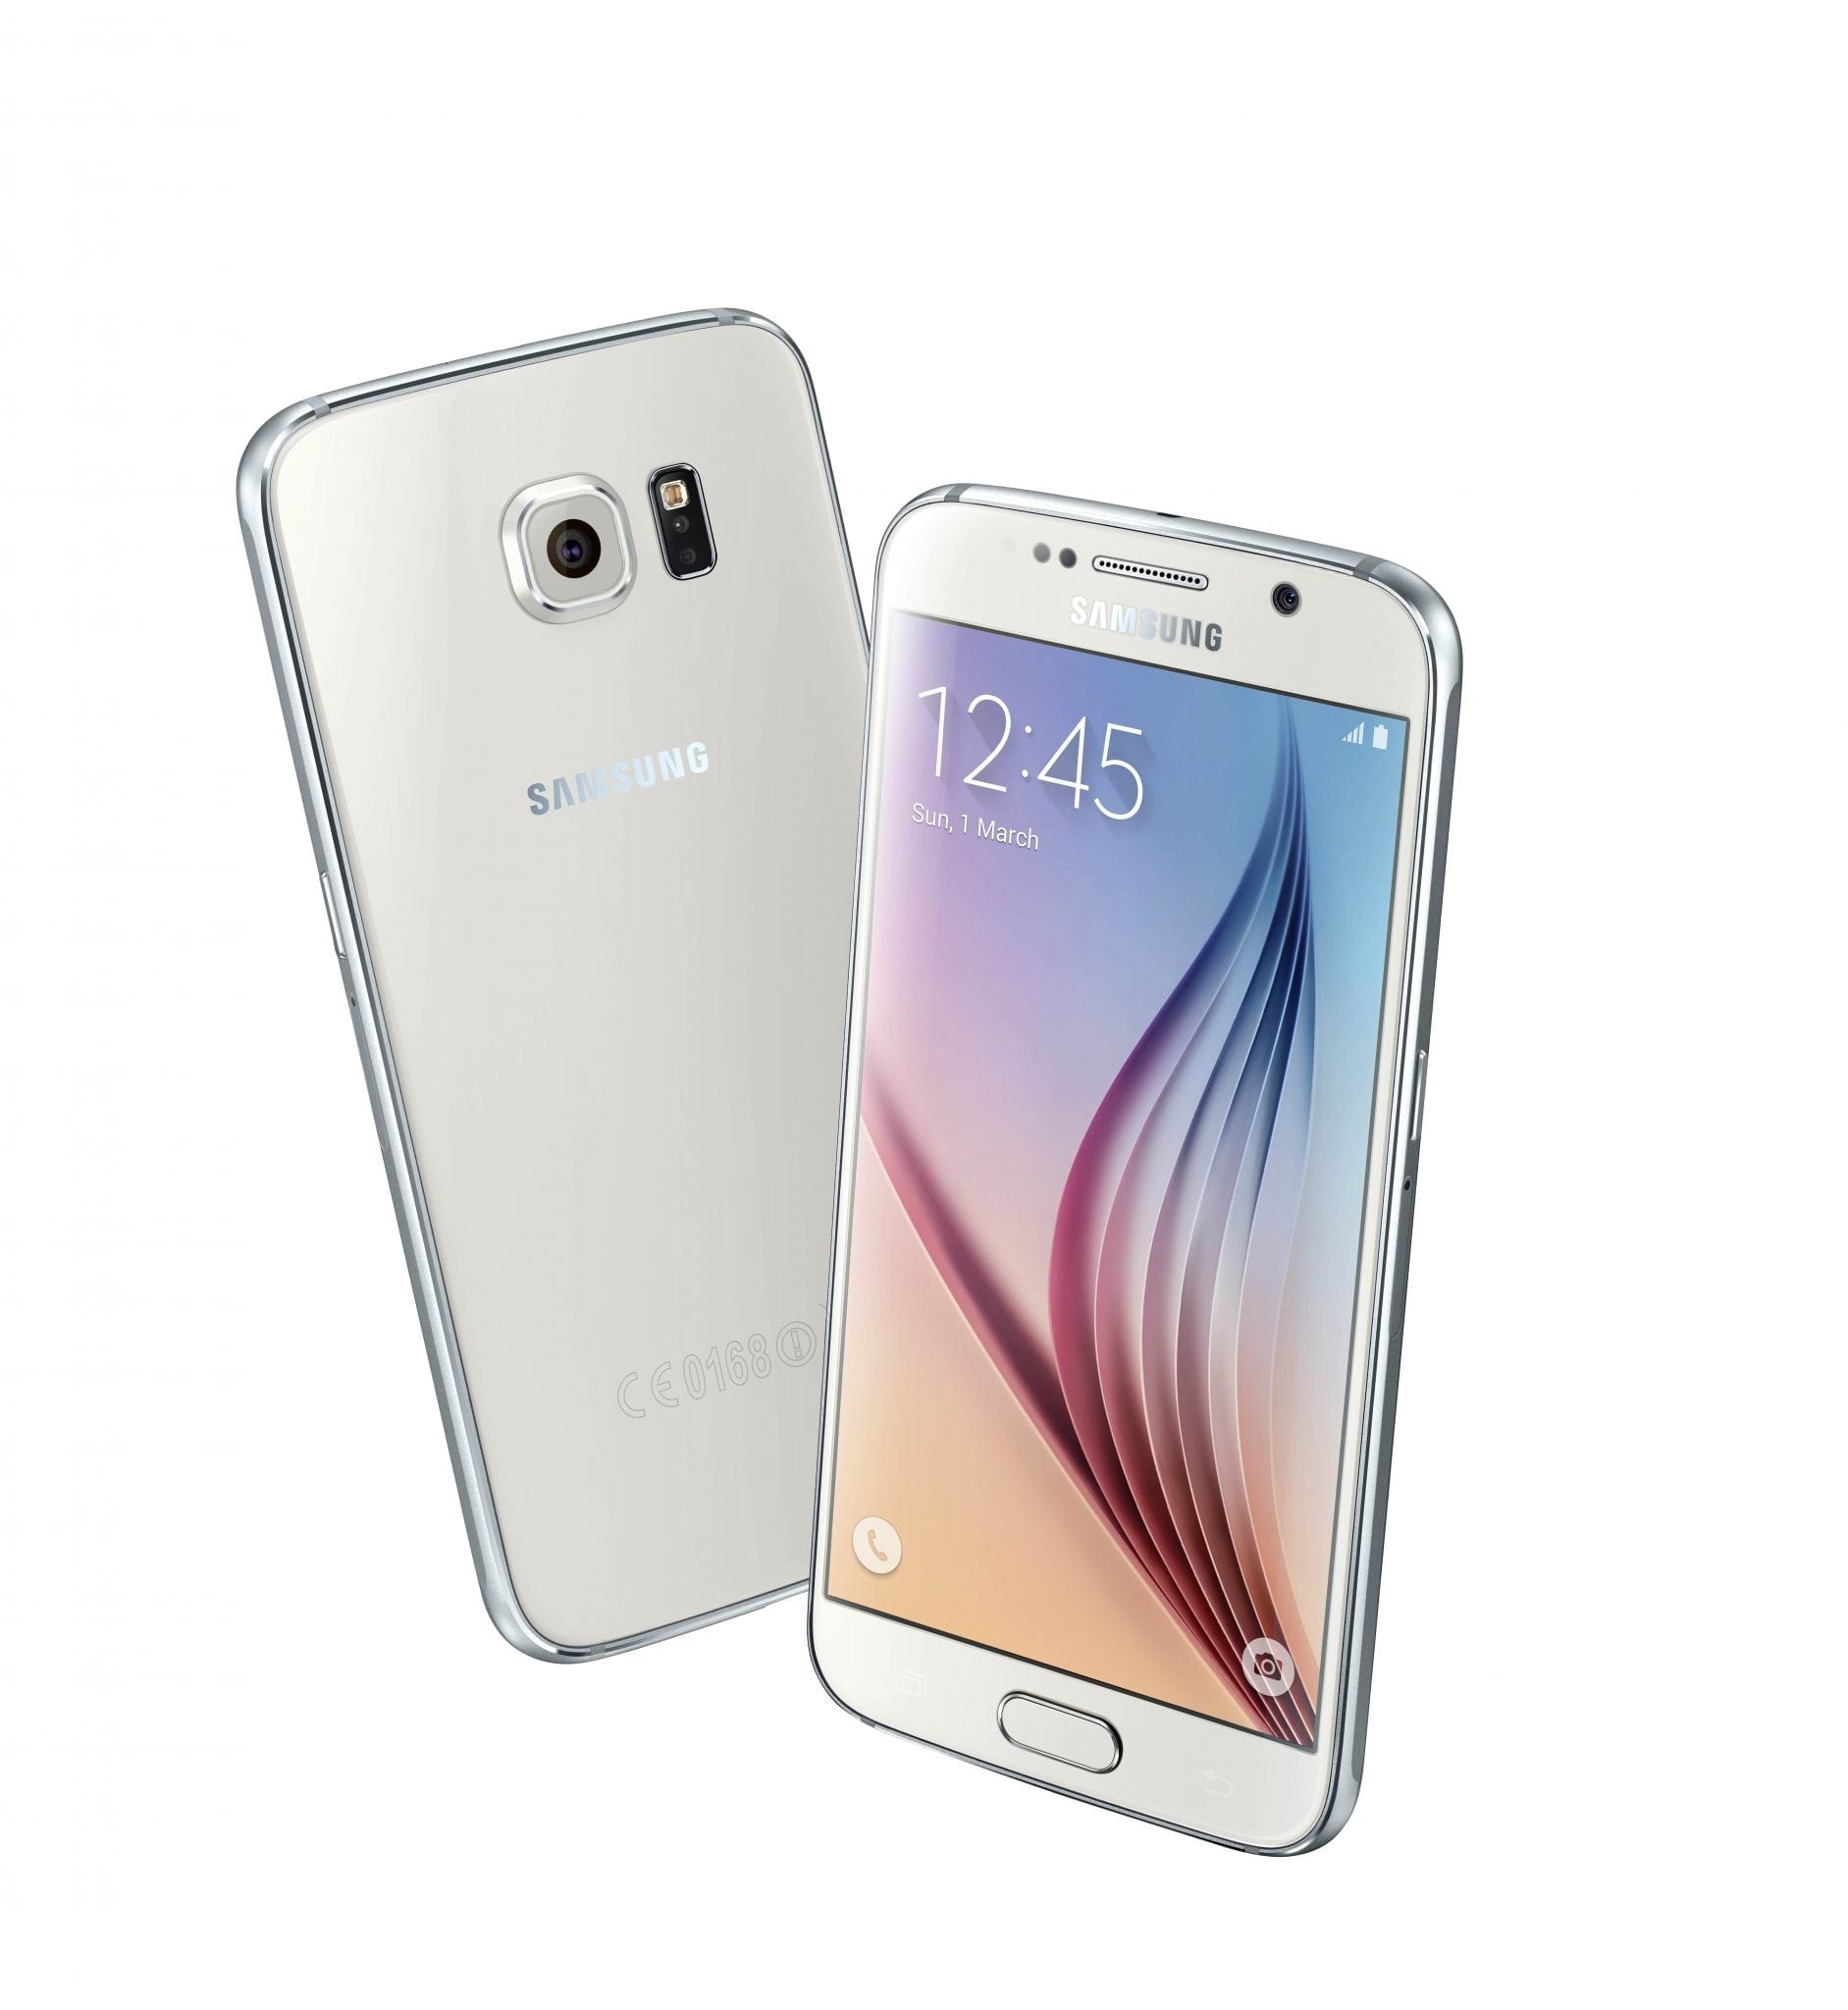 Samsung prezintă o serie de aplicații dezvoltate local pentru utilizatorii Galaxy S6 și S6 edge